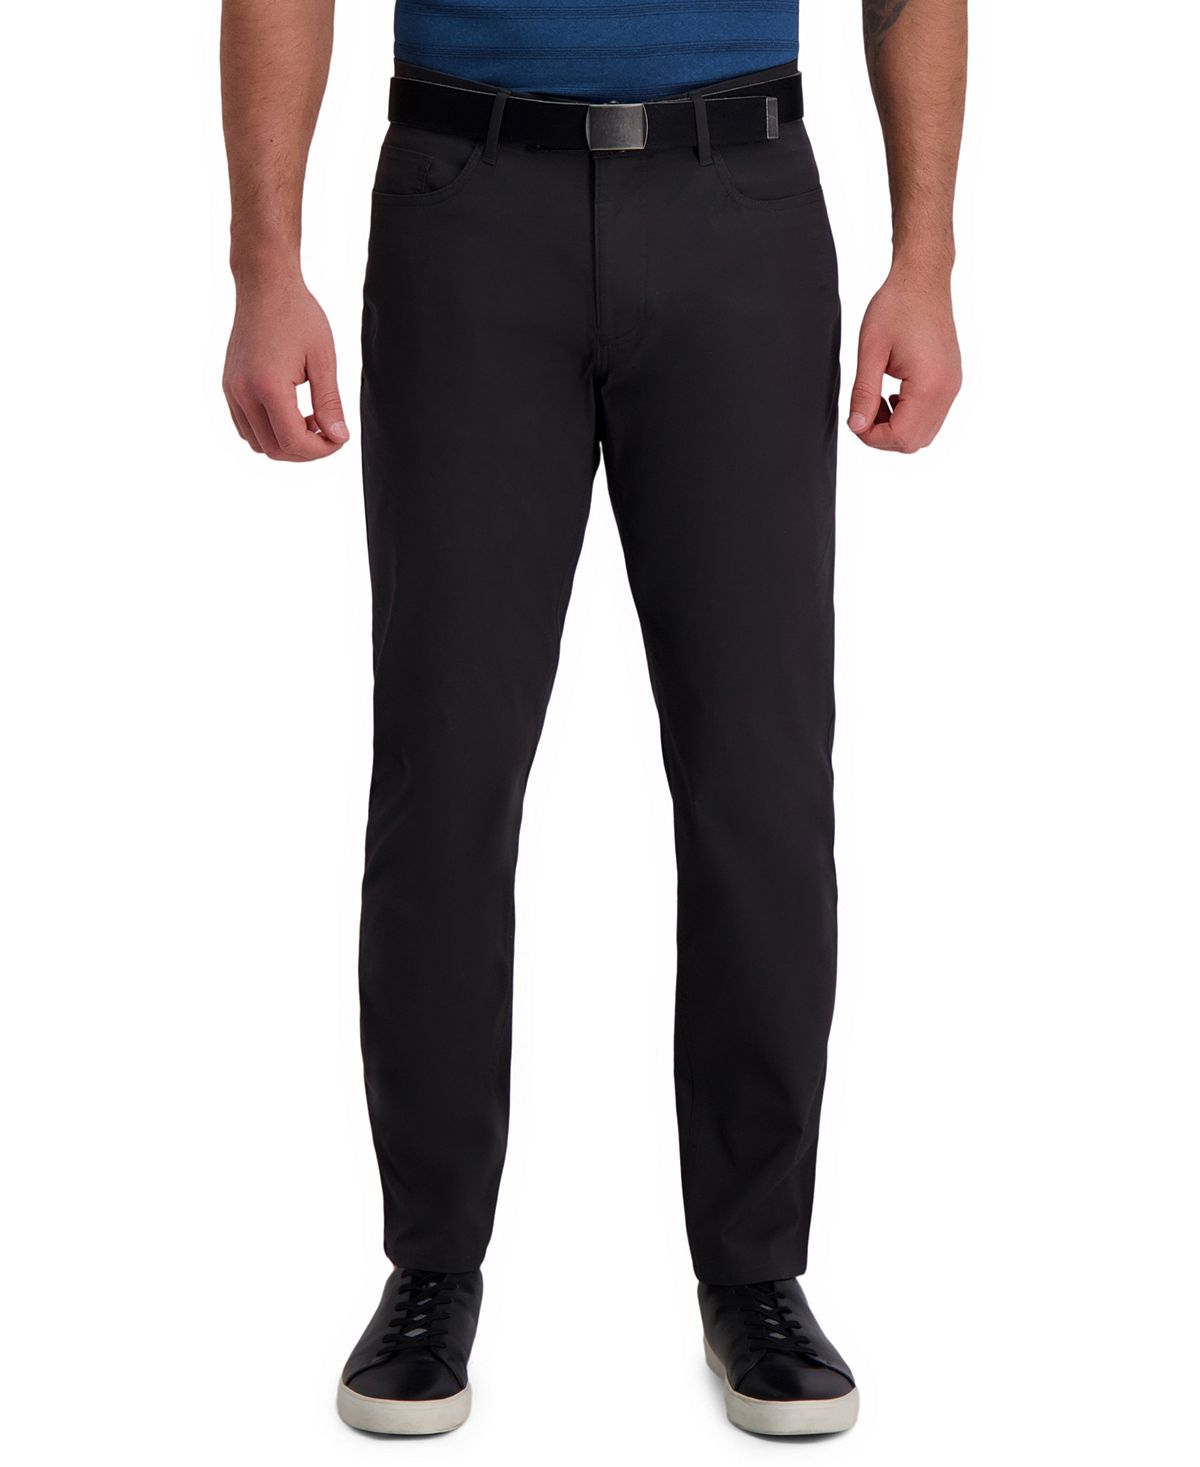 Повседневные брюки active series city flex traveler slim fit flat front с 5 карманами (рипстоп) Haggar